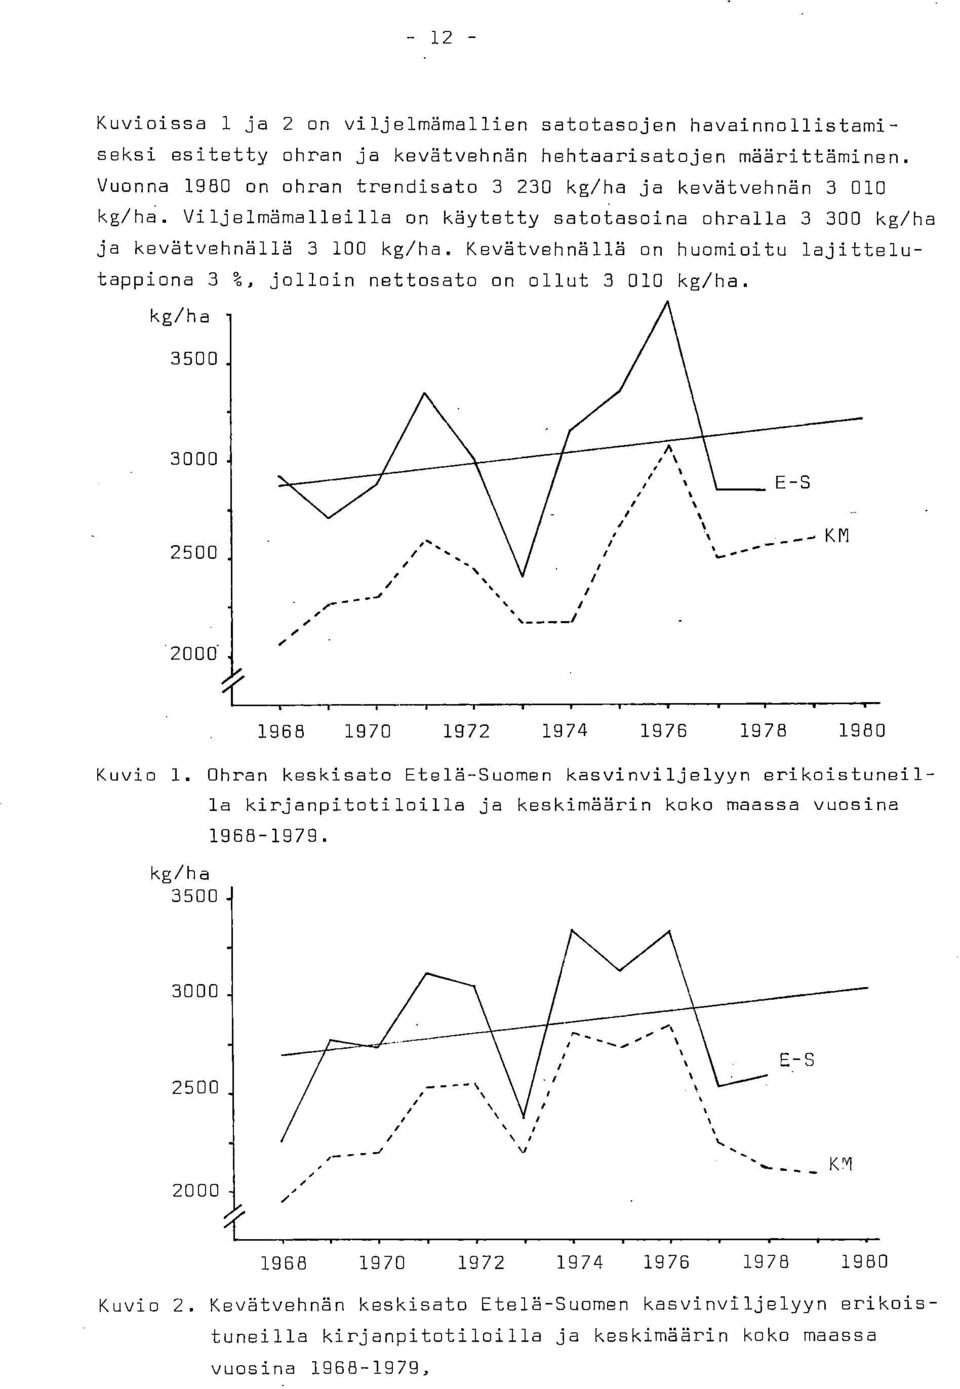 Kevätvehnällä on huomioitu lajittelutappiona 3 %, jolloin nettosato on ollut 3 010 kg/ha. kg/ha 3500 3000 2500 2000' kg/ha 3500. 1968 1970 1972 1974 1976 1978 1980 Kuvio 1.